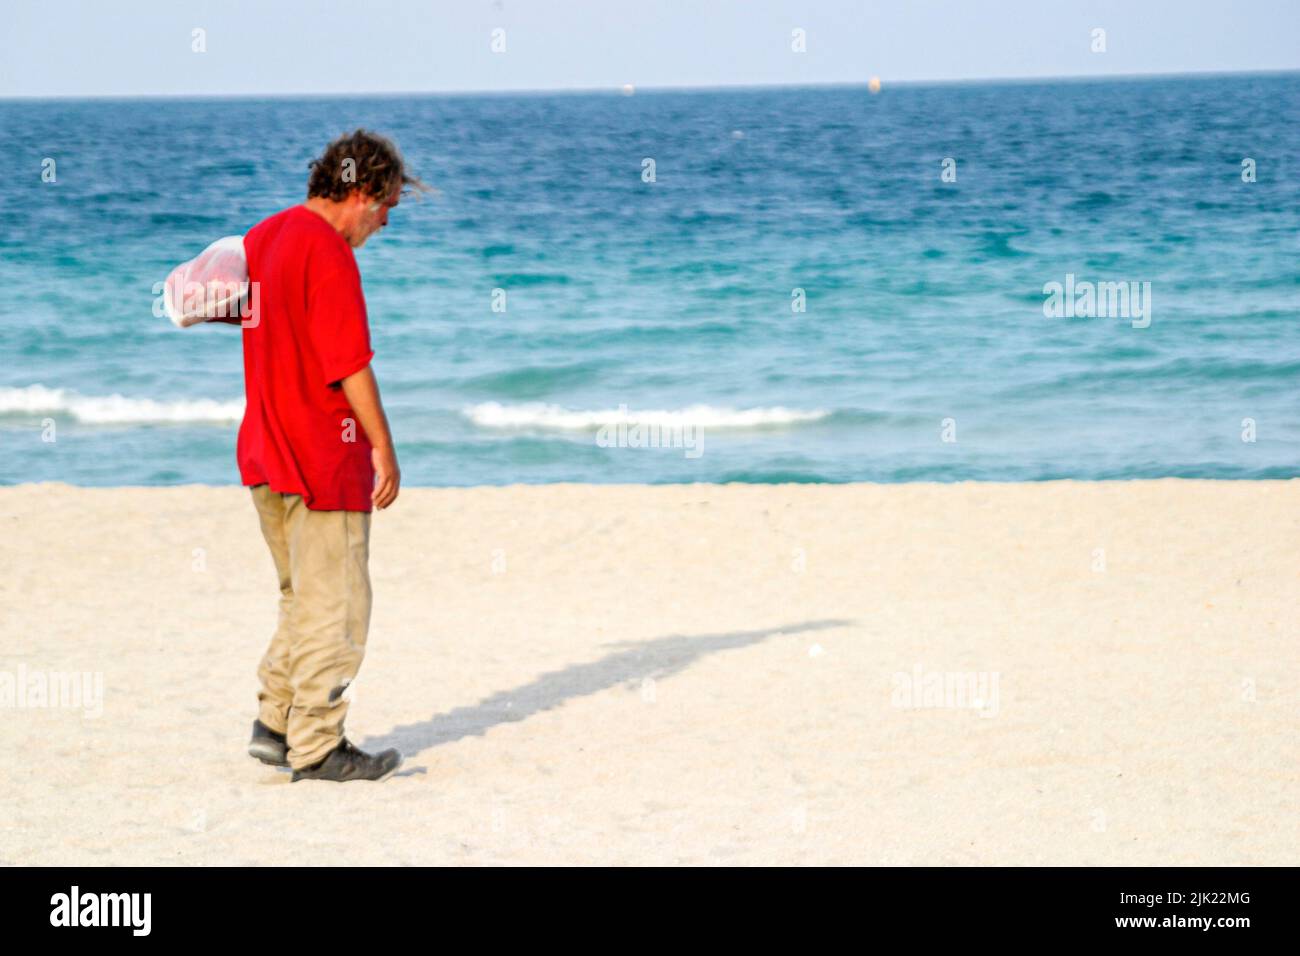 Miami Beach Florida, costa atlántica costa costa costa costa costa mar, vagancia sin hogar mendigo hombre macho, playas públicas arena, personas persona Foto de stock